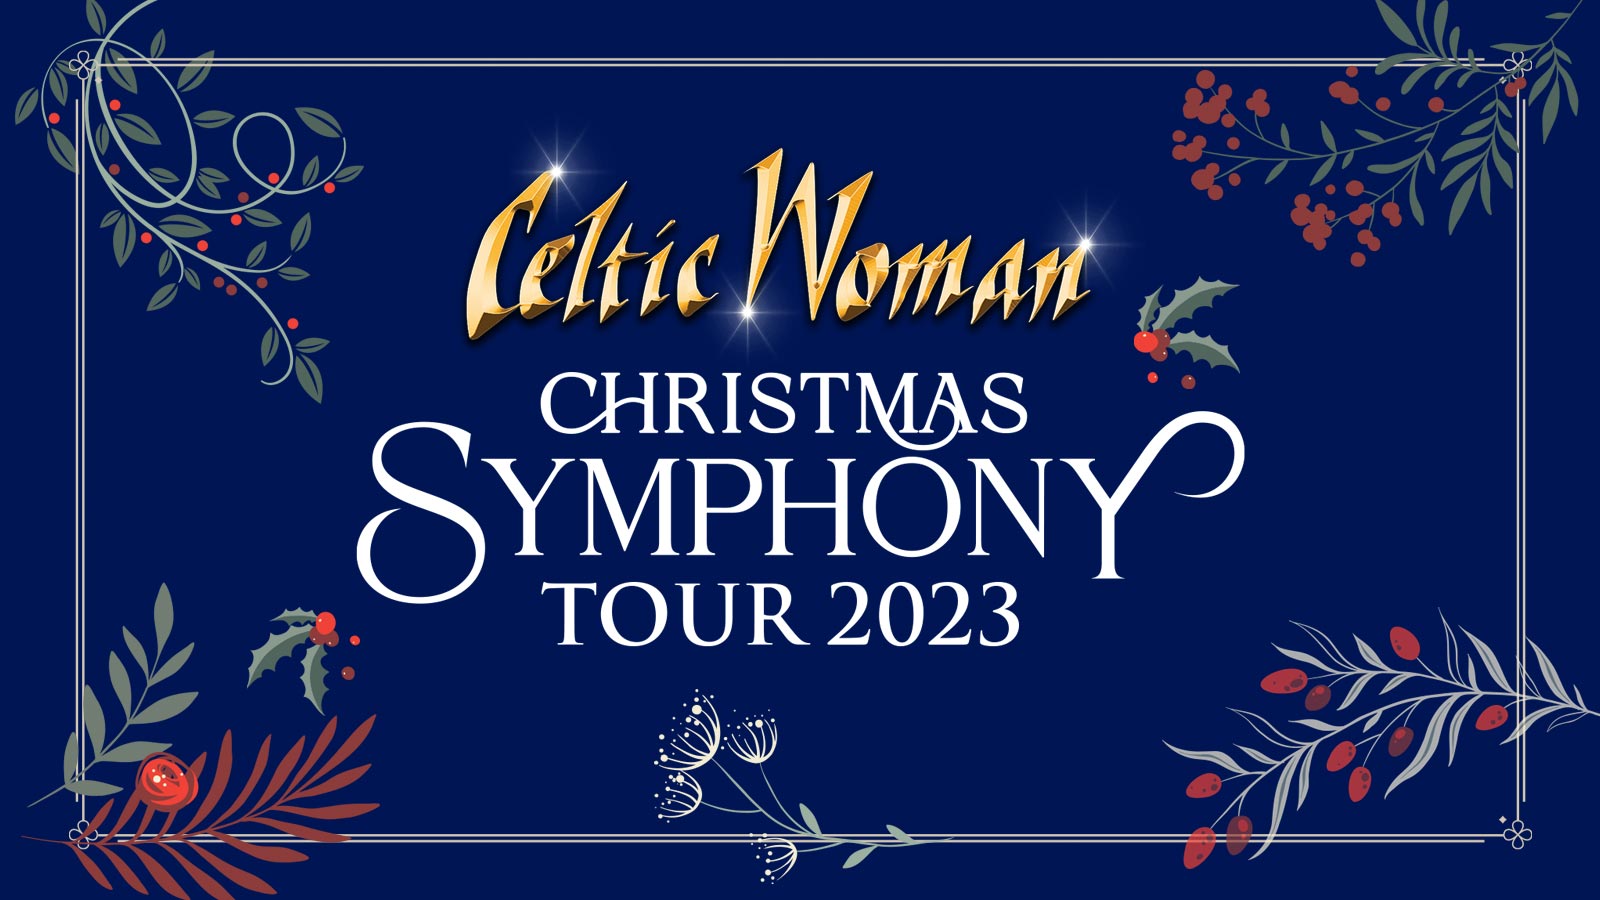 Celtic Woman Christmas Symphony Tour 2023